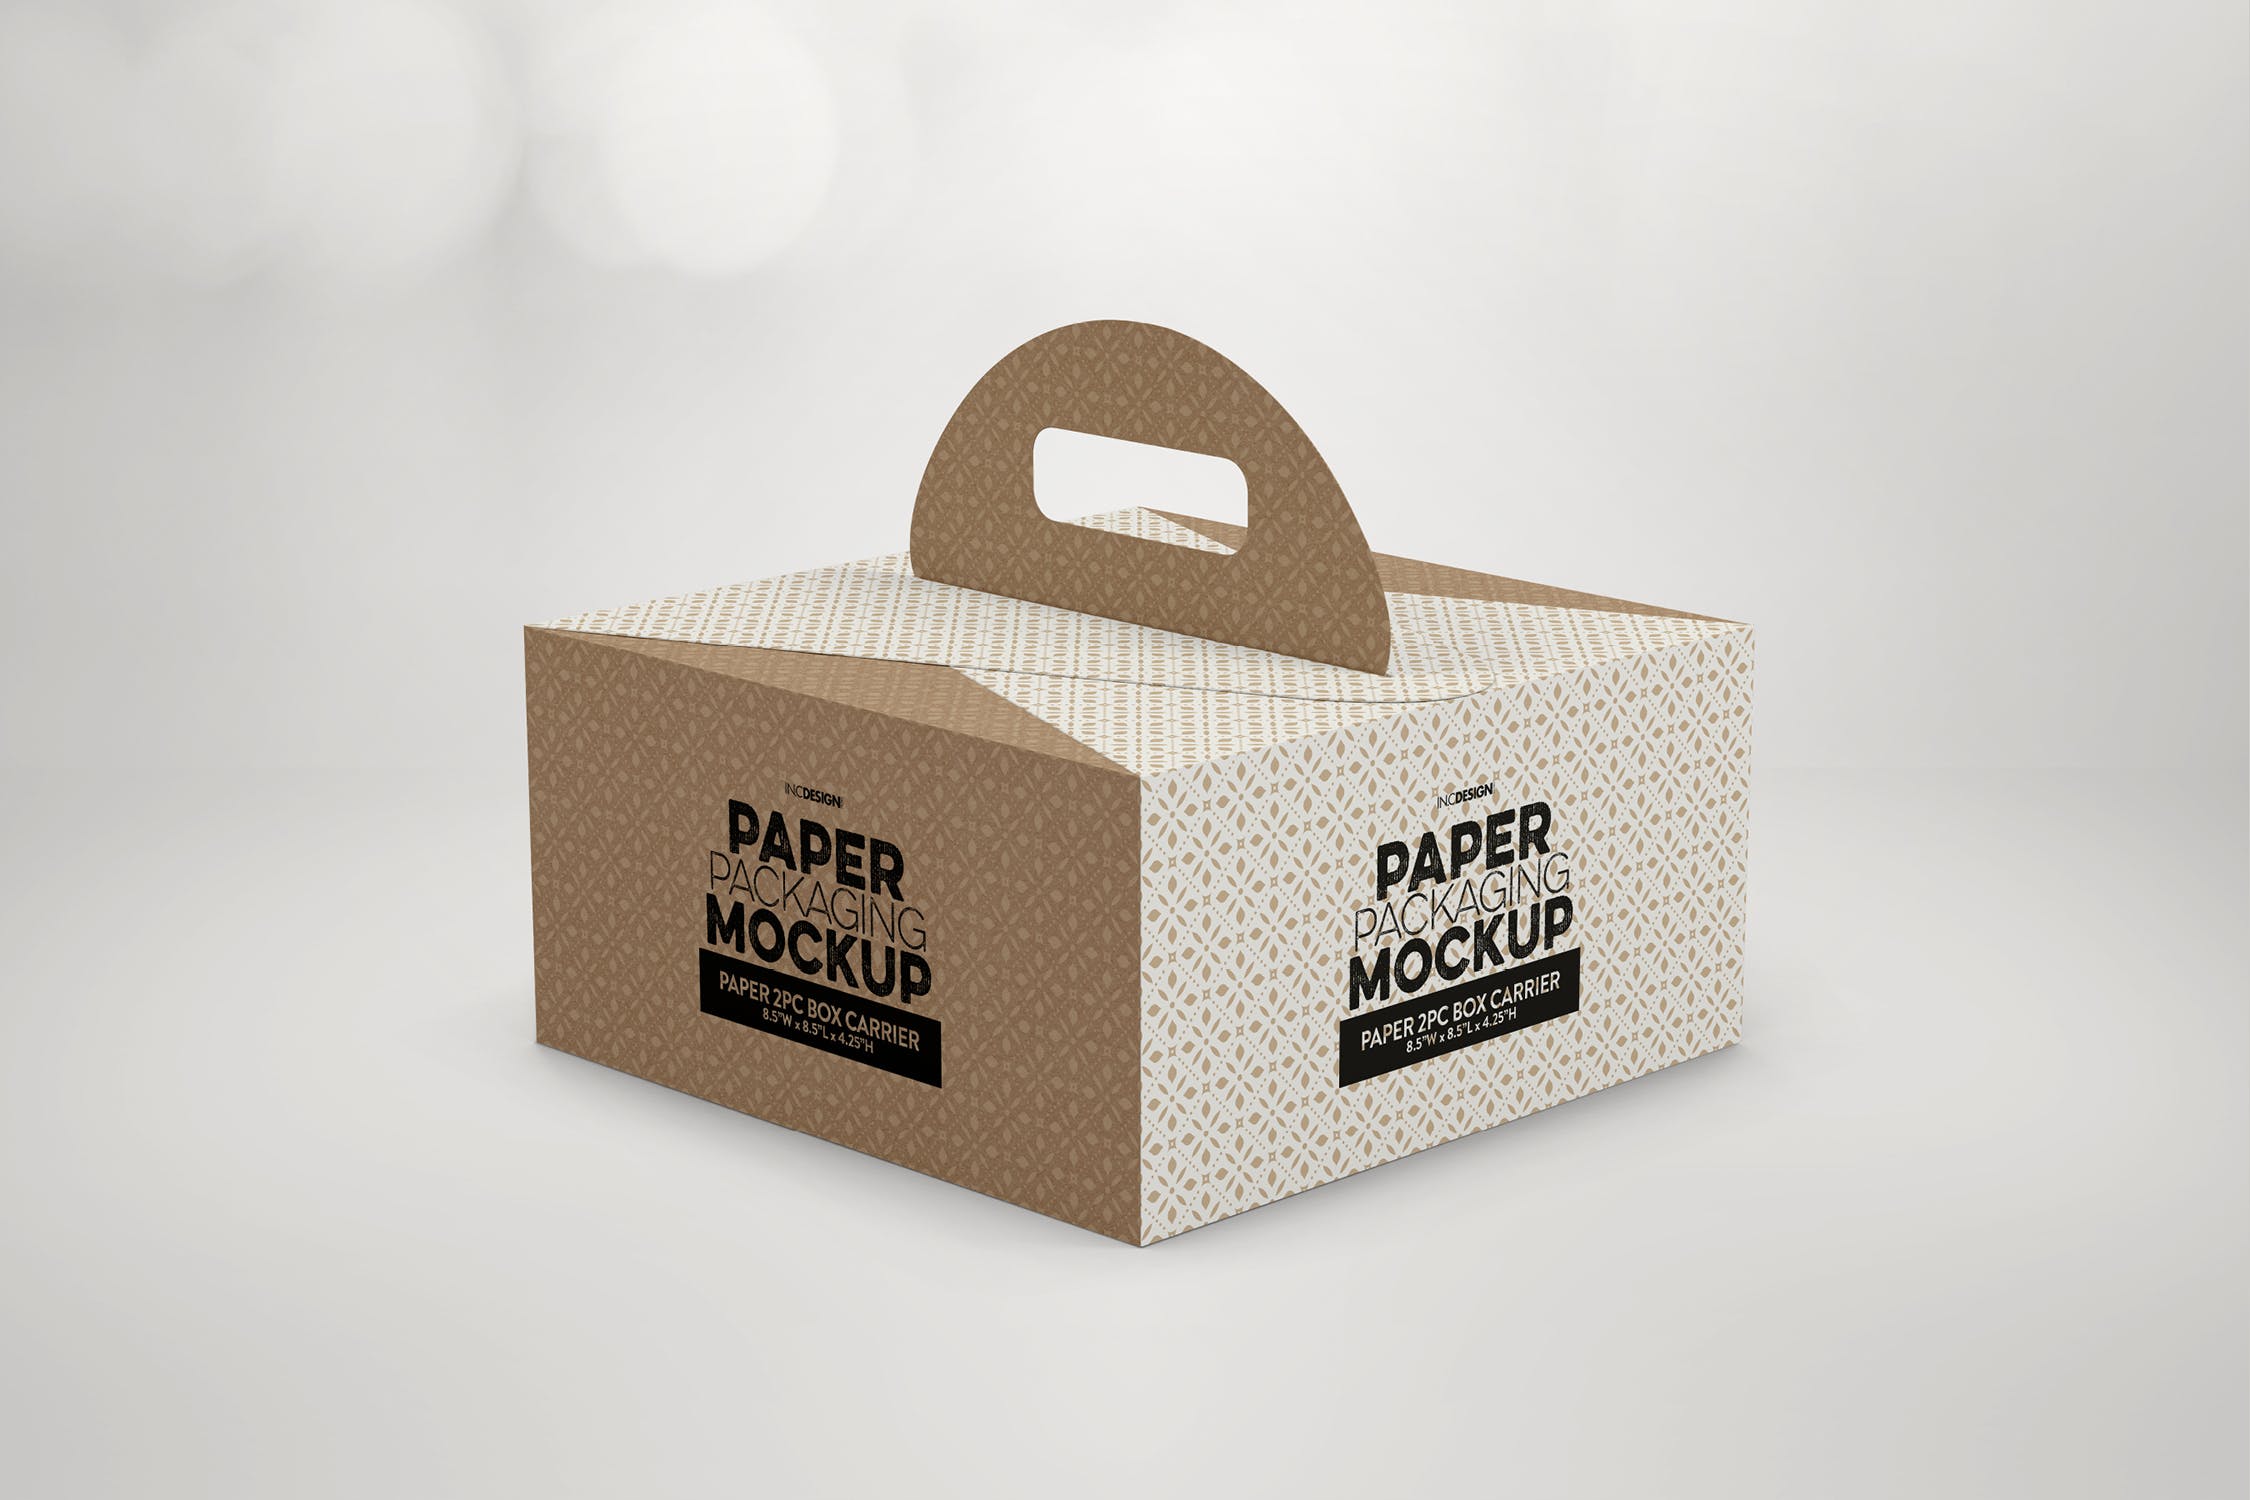 2件装纸盒包装设计样机模板 2pc PaperBox Carrier PackagingMockup插图(2)